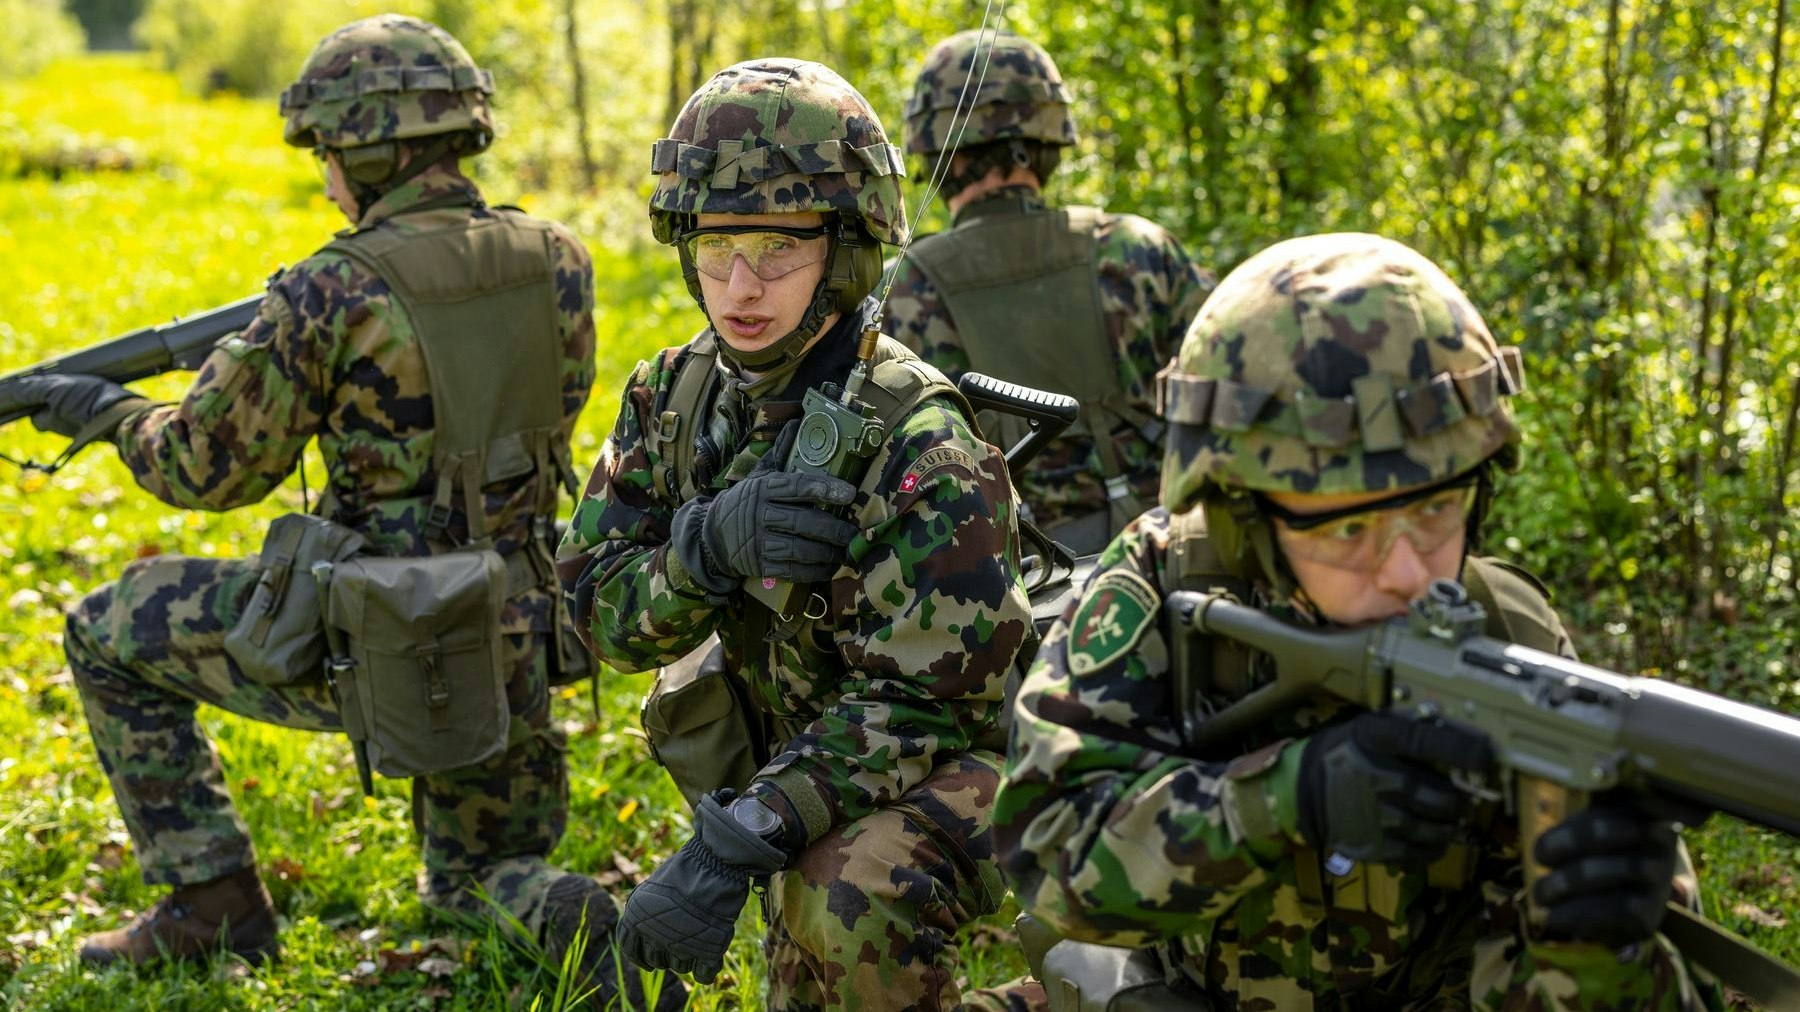 Diversi Soldati posizionati in un'area aperta e boscosa.